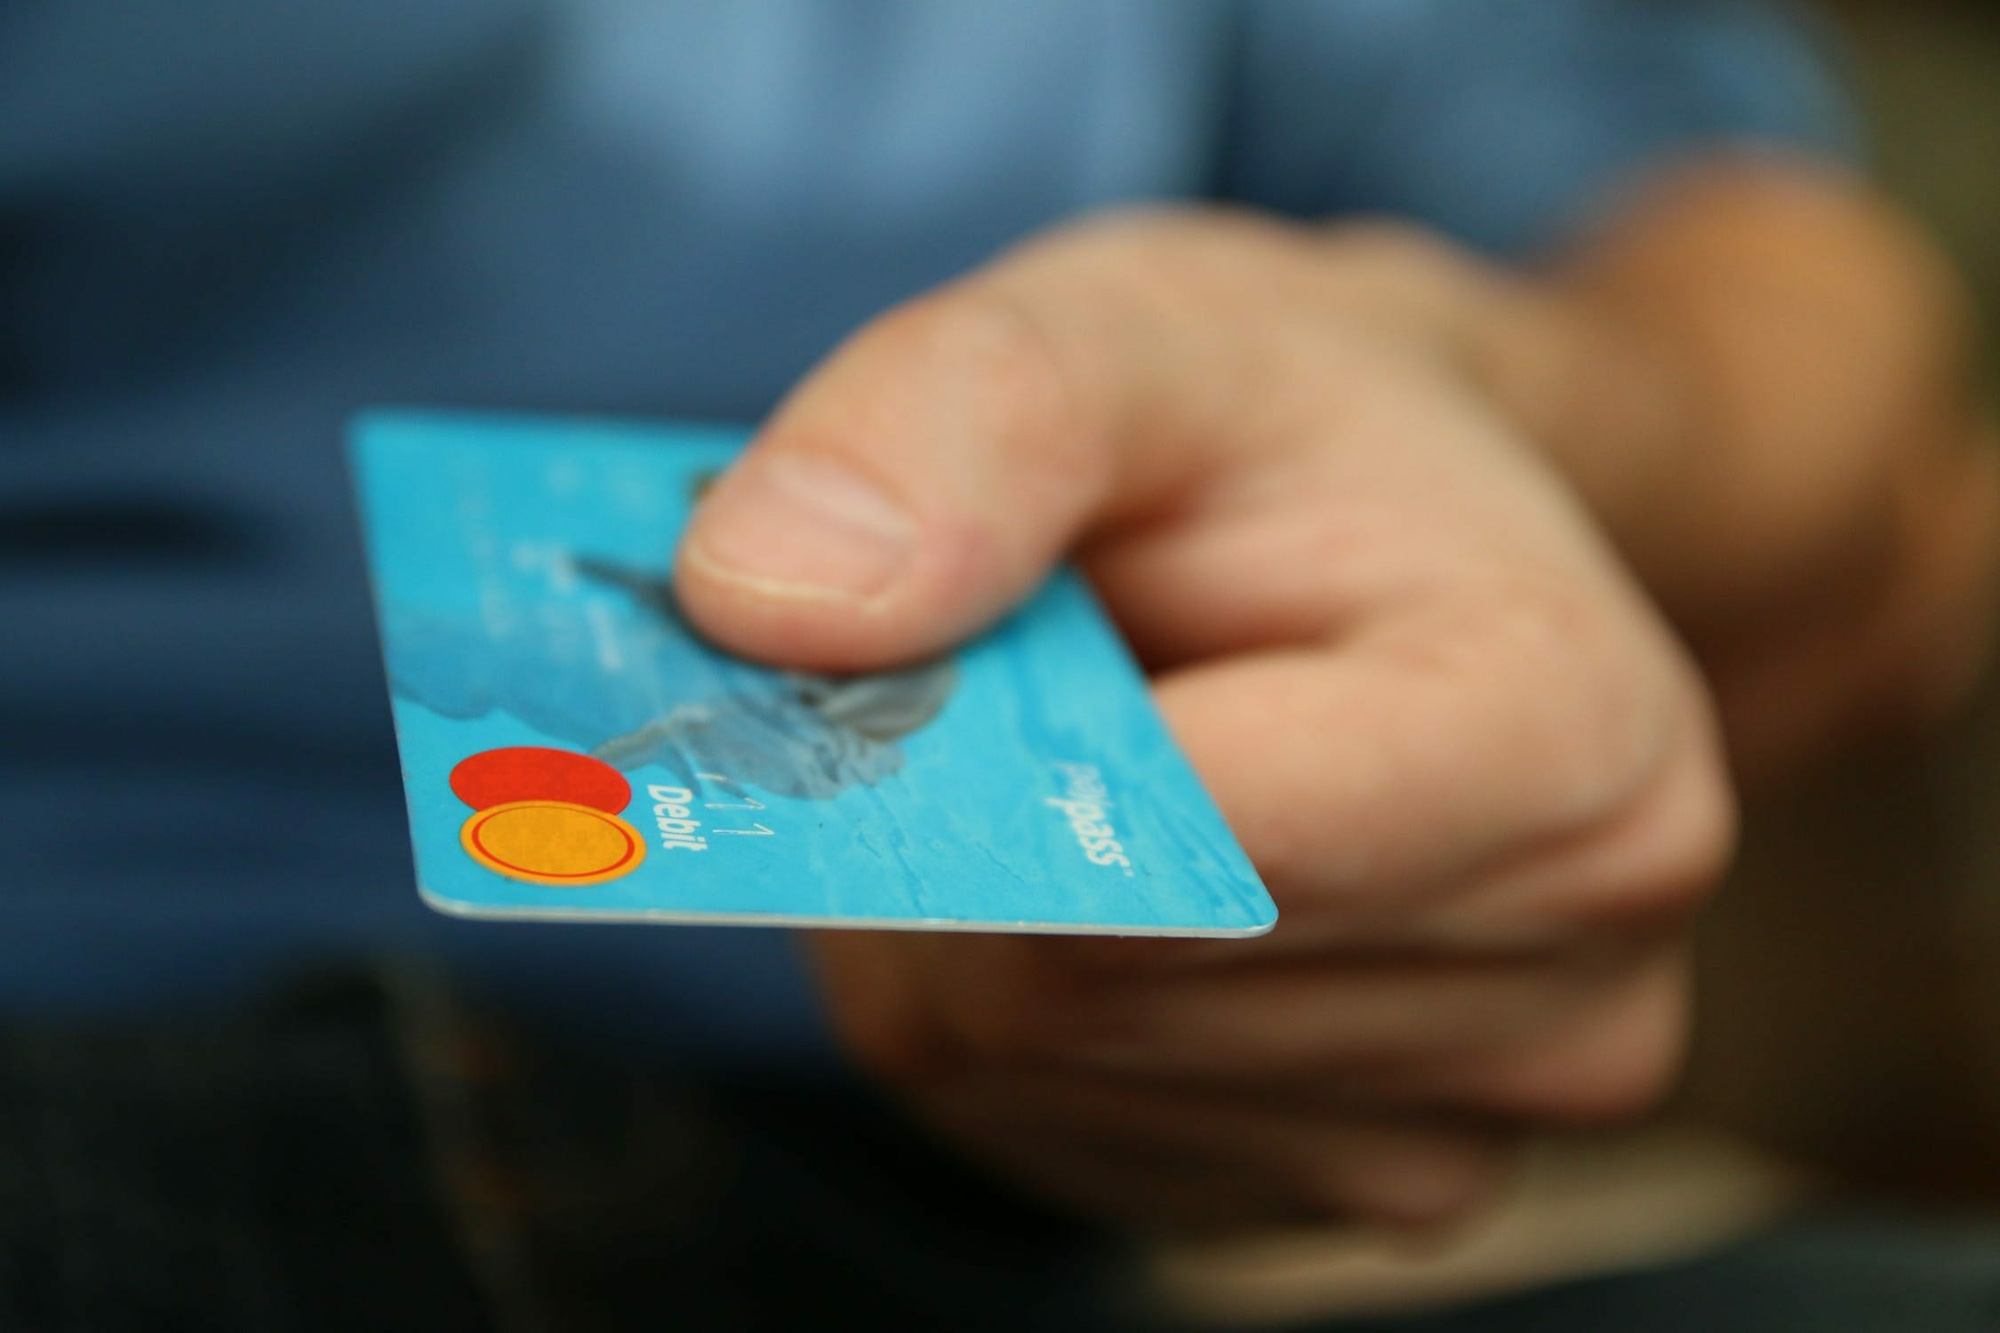 11 sai lầm nghiêm trọng khi sử dụng thẻ tín dụng bạn cần tuyệt đối để ý - Ảnh 6.